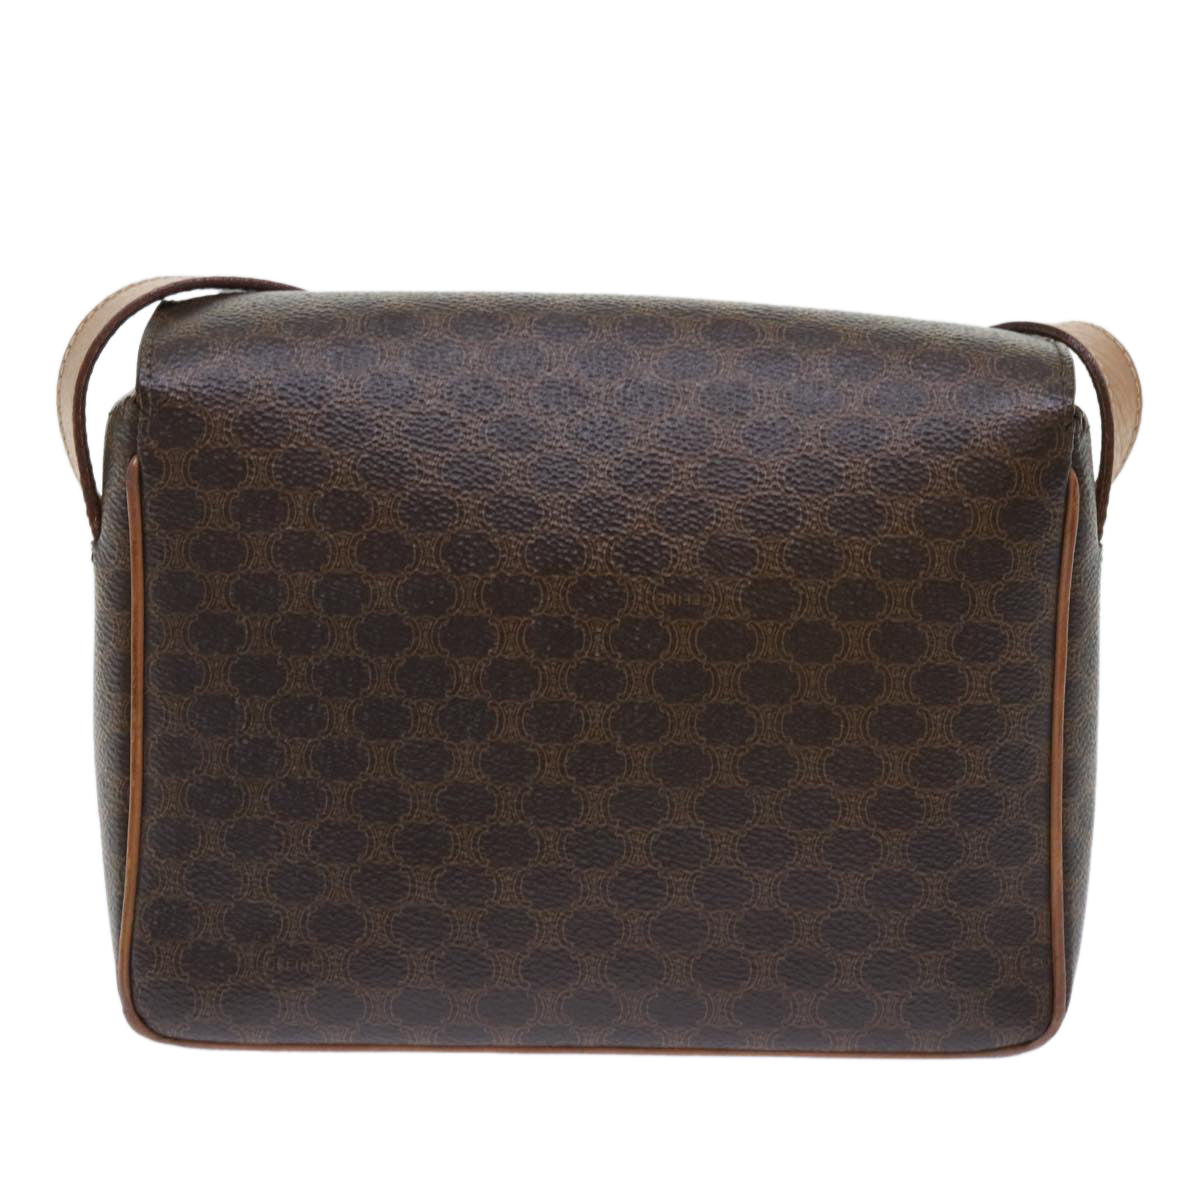 CELINE Macadam Canvas Shoulder Bag PVC Leather Brown Auth 51453 - 0